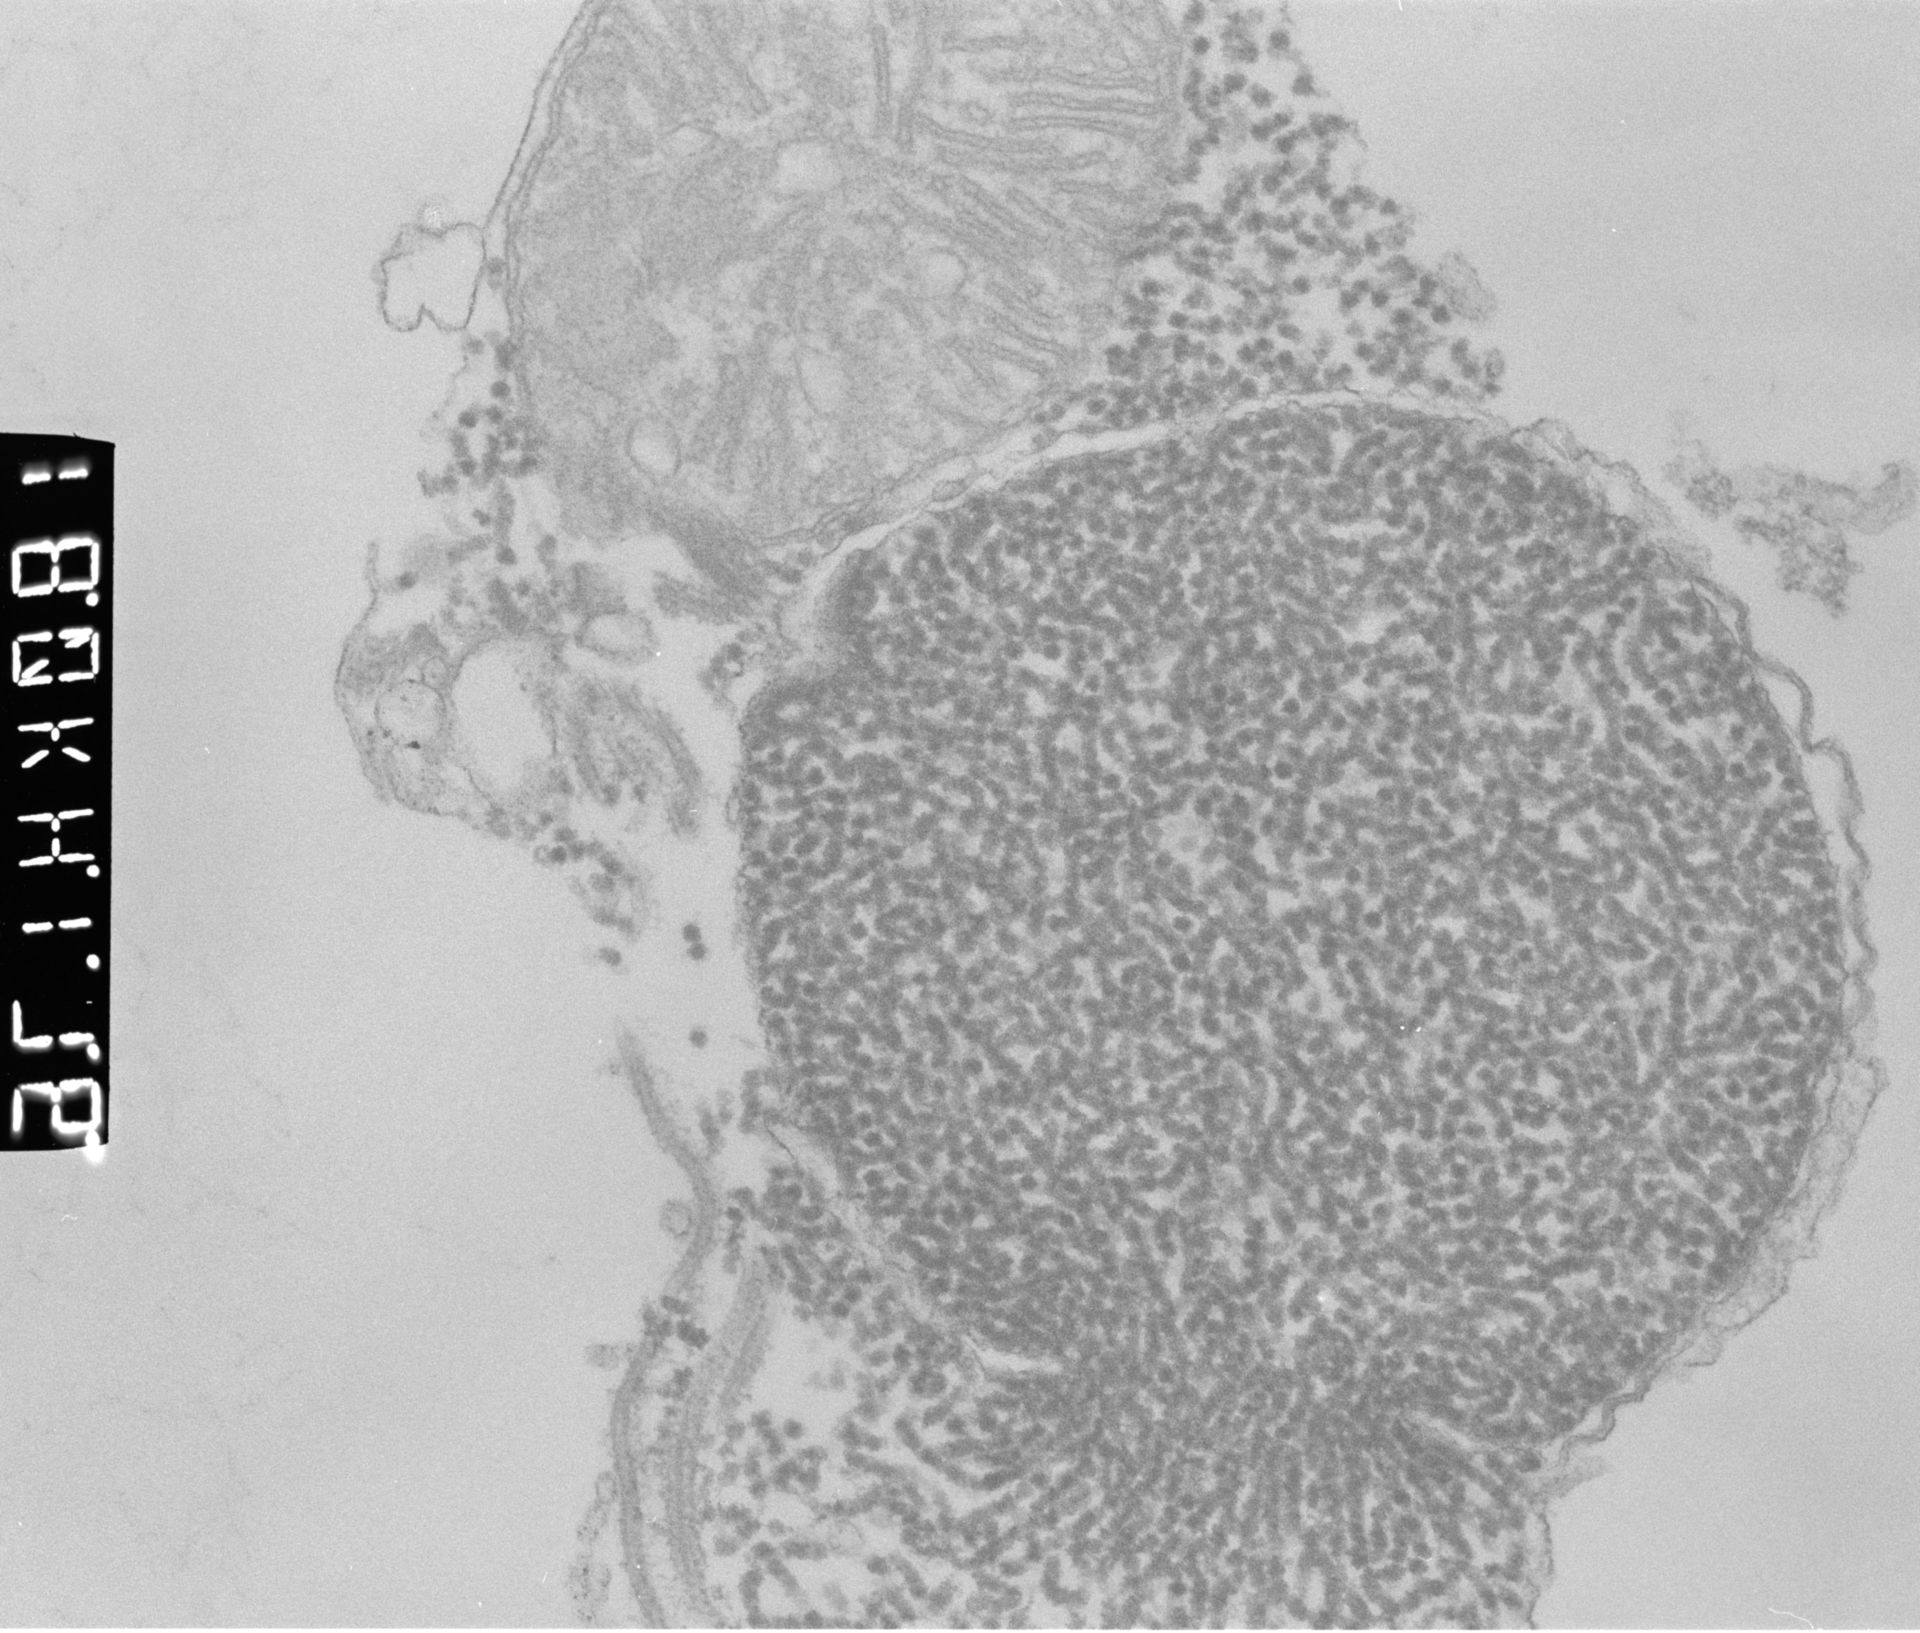 Patiria miniata (Male germ cell nucleus) - CIL:449